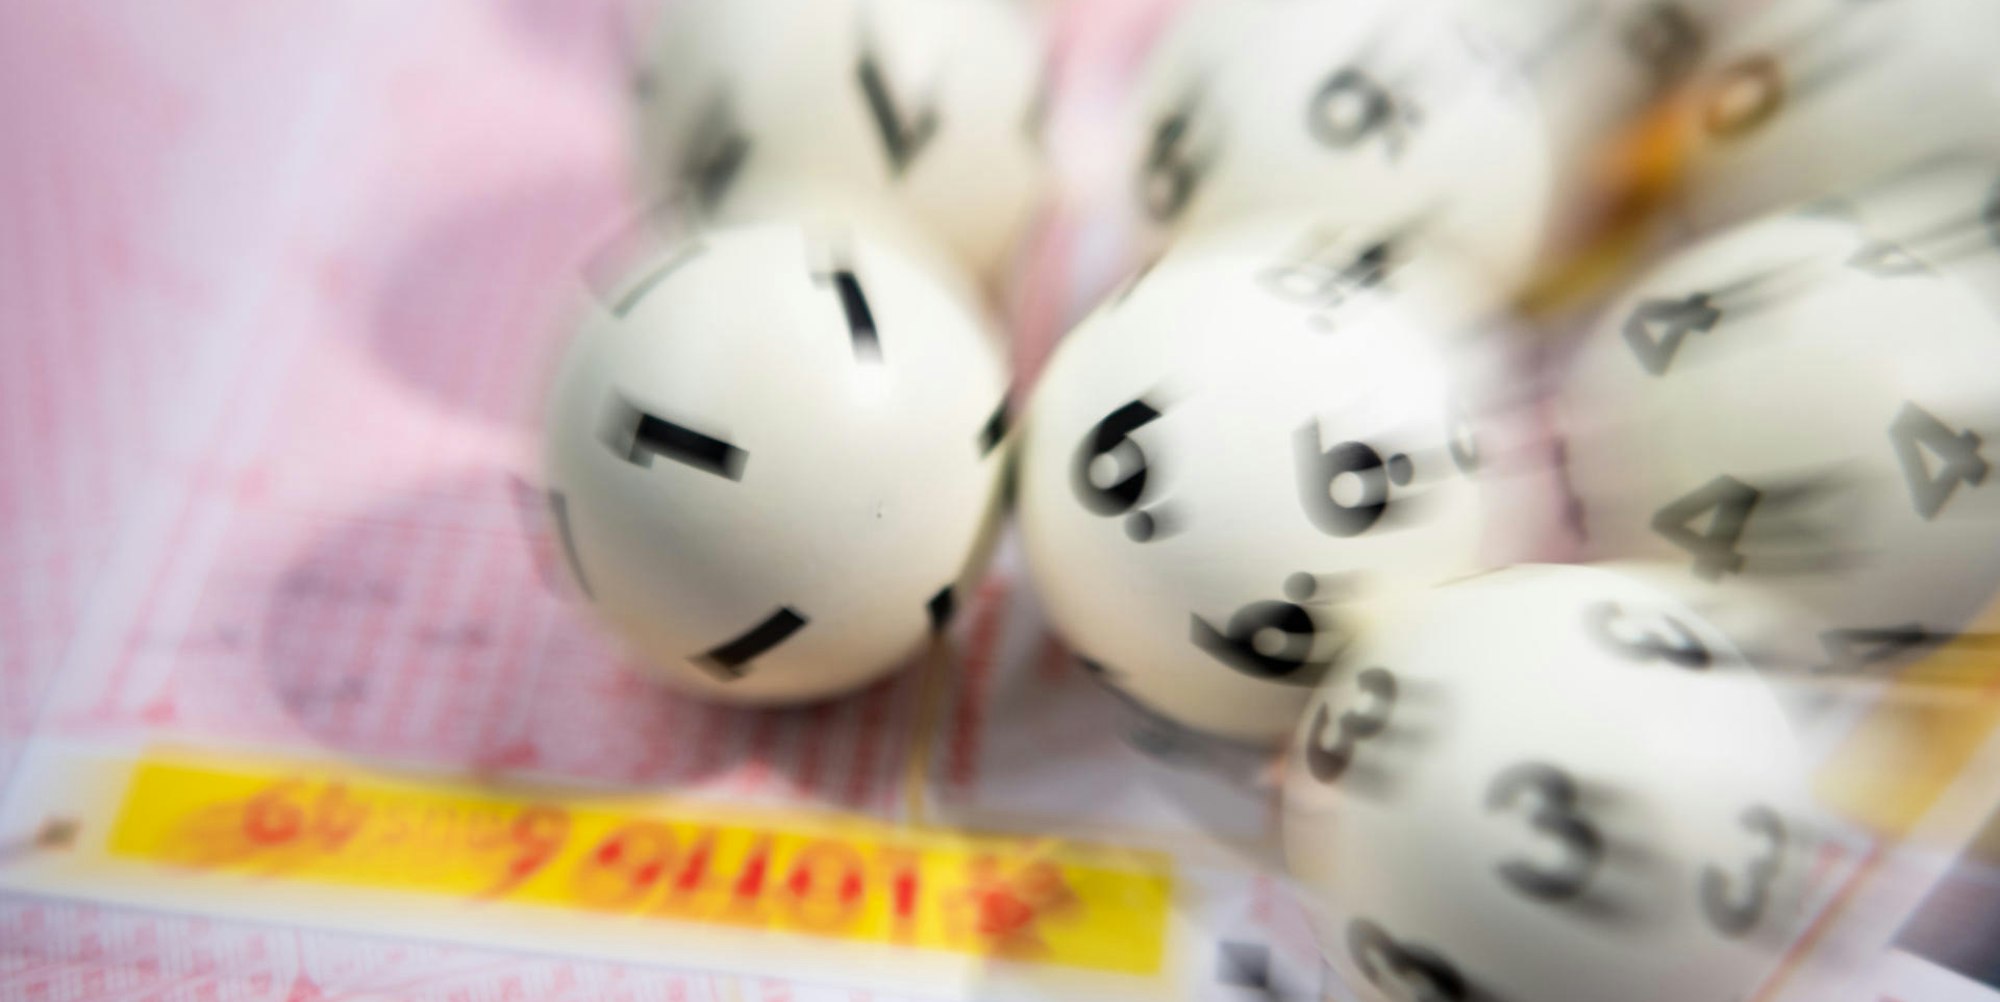 Lottokugeln auf Lotto-Tippschein